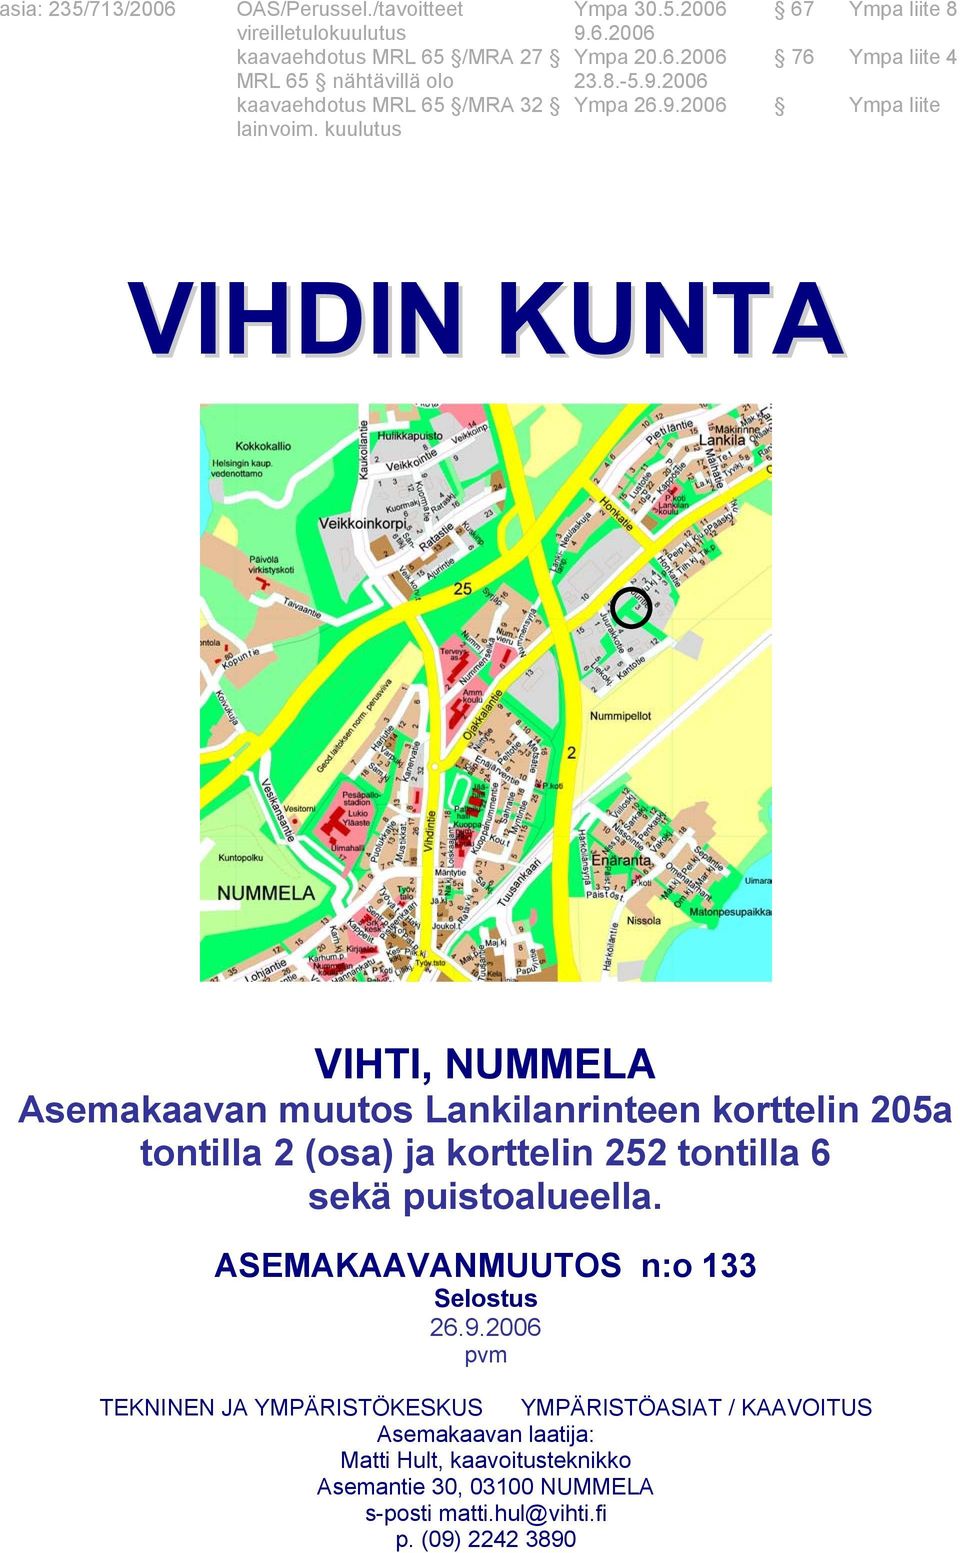 kuulutus VIHDIN KUNTA VIHTI, NUMMELA Asemakaavan muutos Lankilanrinteen korttelin 205a tontilla 2 (osa) ja korttelin 252 tontilla 6 sekä puistoalueella.